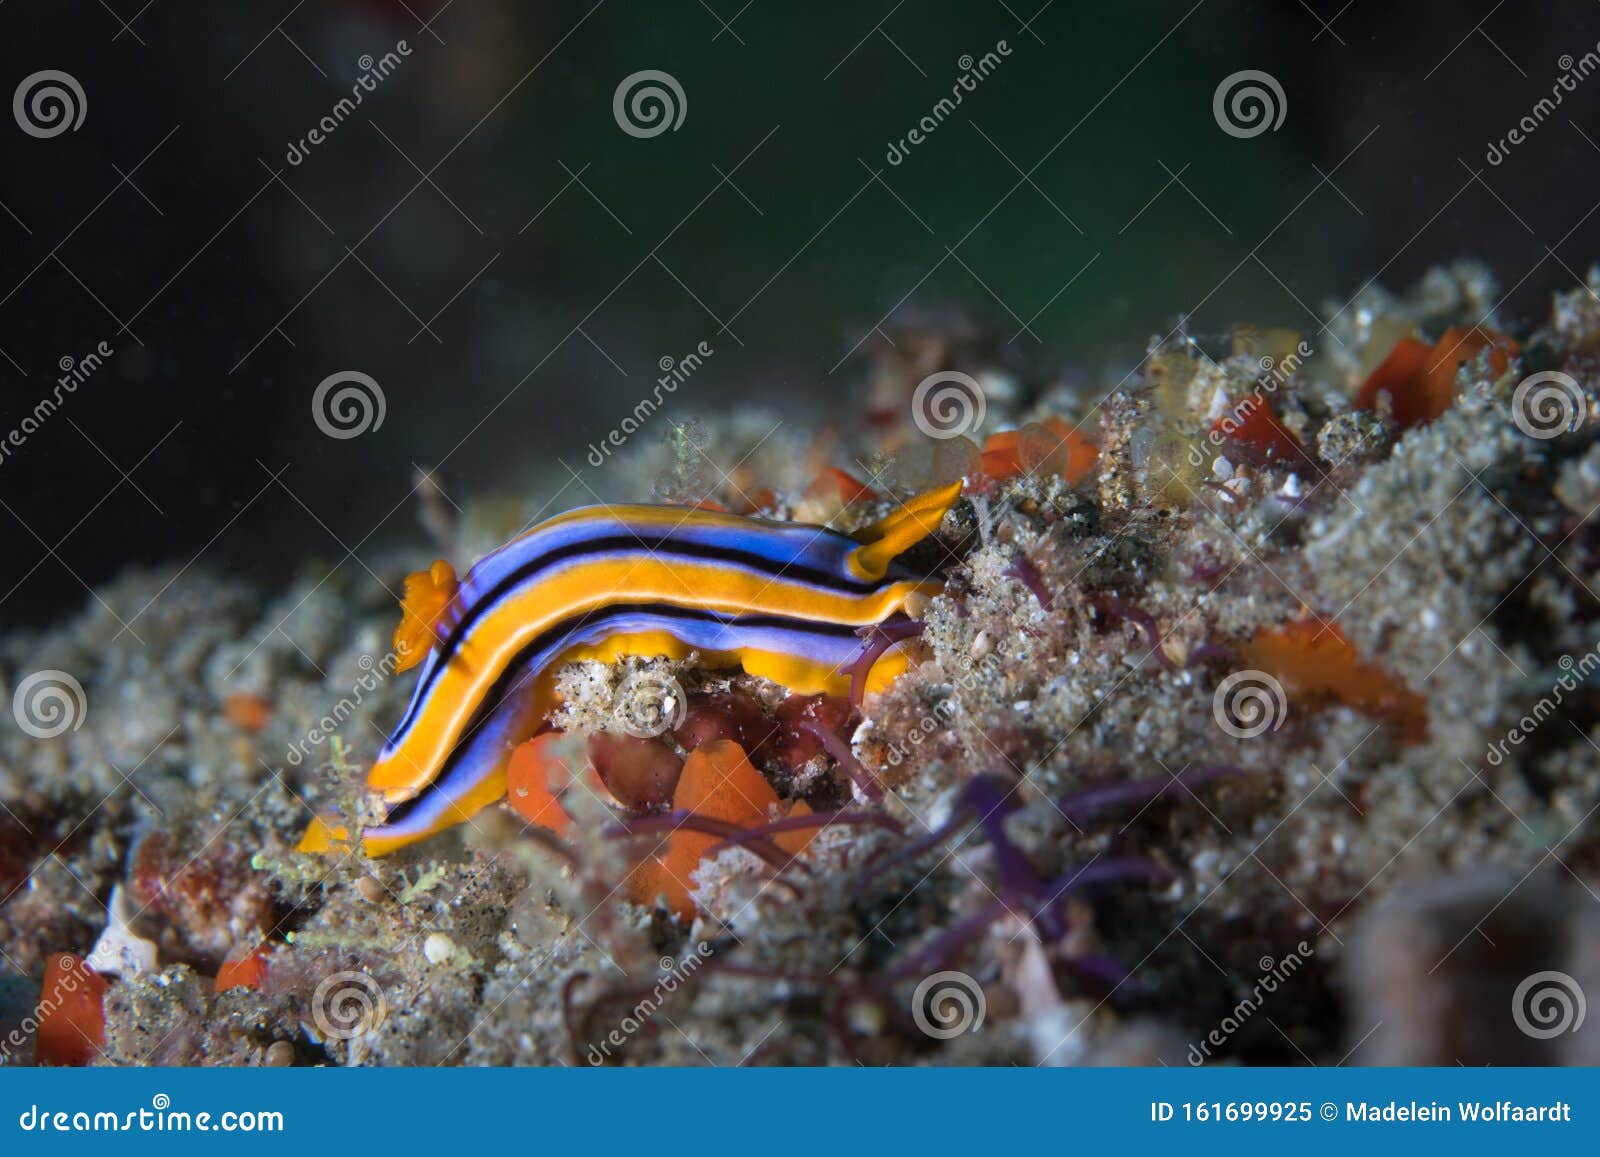 Sea slug blue TikTok user